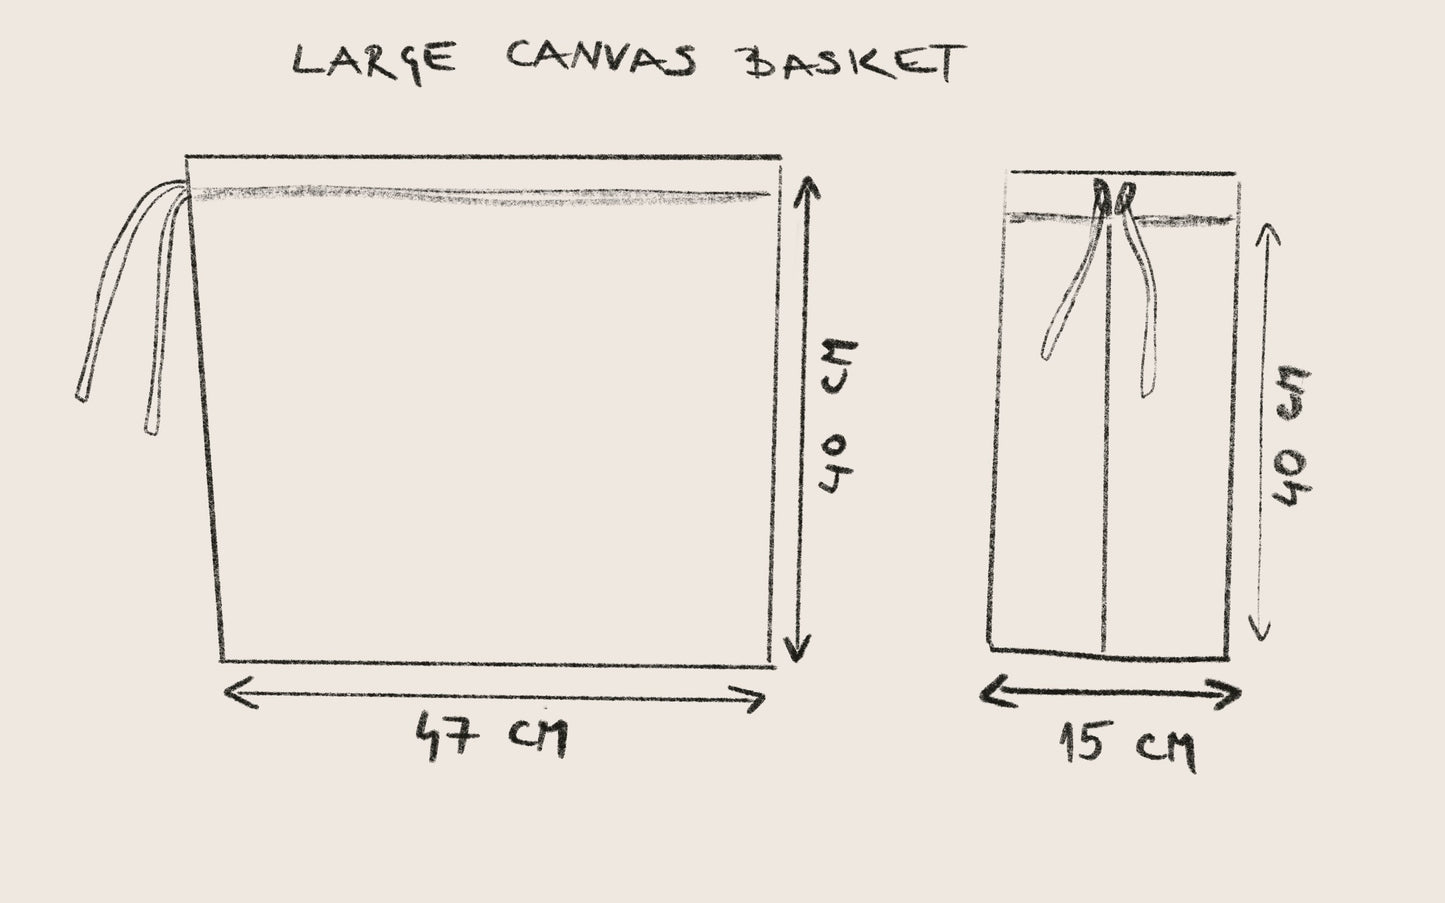 Large canvas storage basket - Geometric shapes